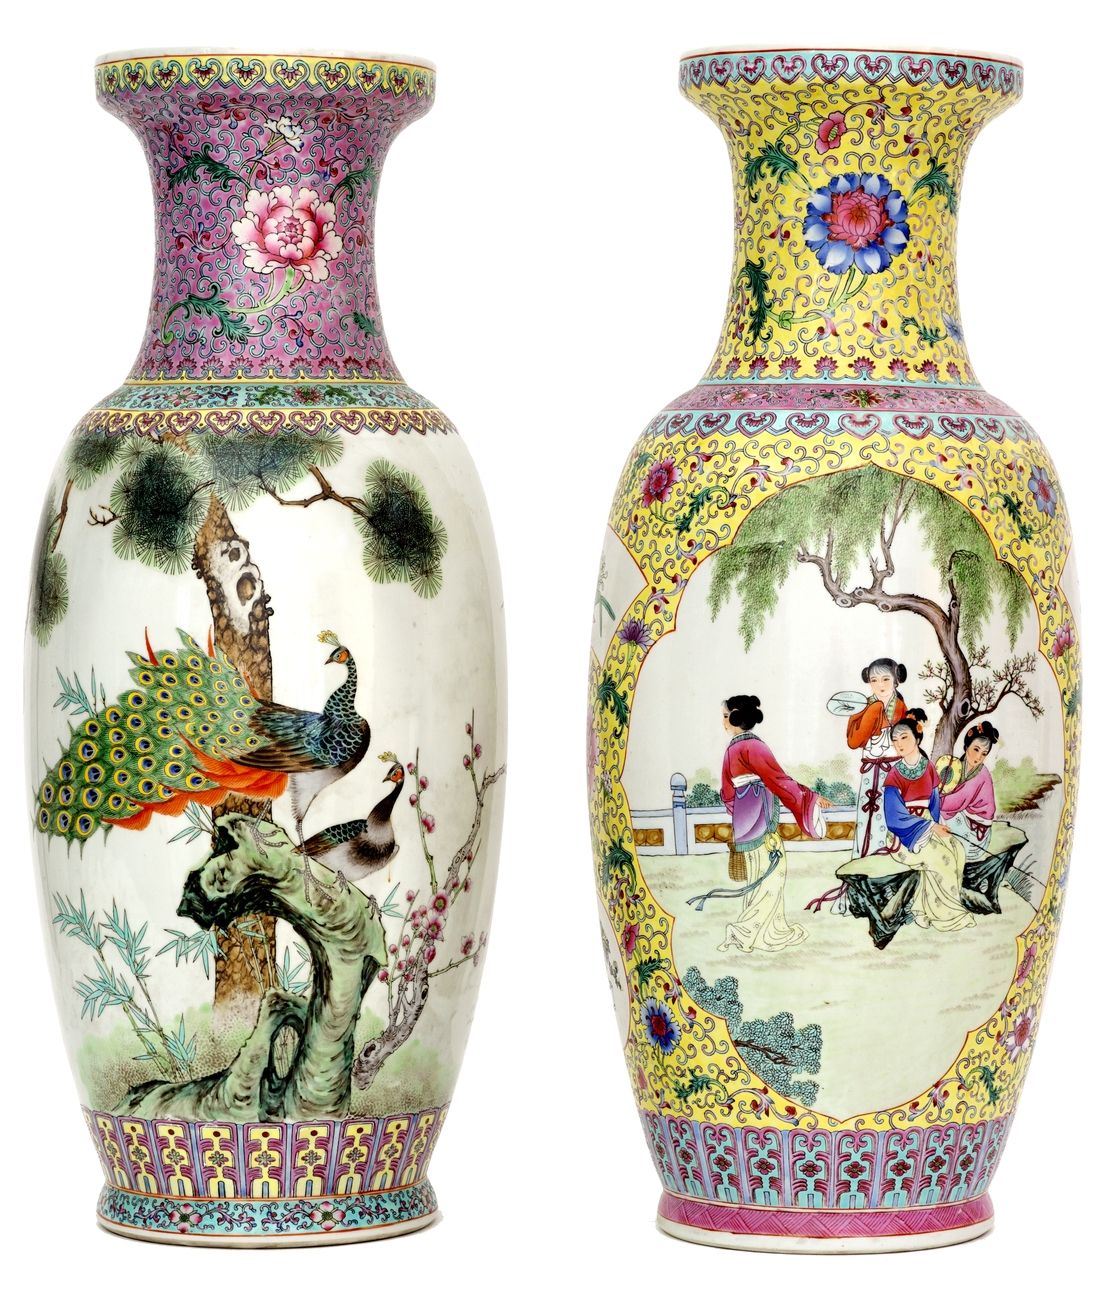 Null China, 20. Jahrhundert
Zwei Porzellanvasen mit einem Dekor aus rosafarbener&hellip;